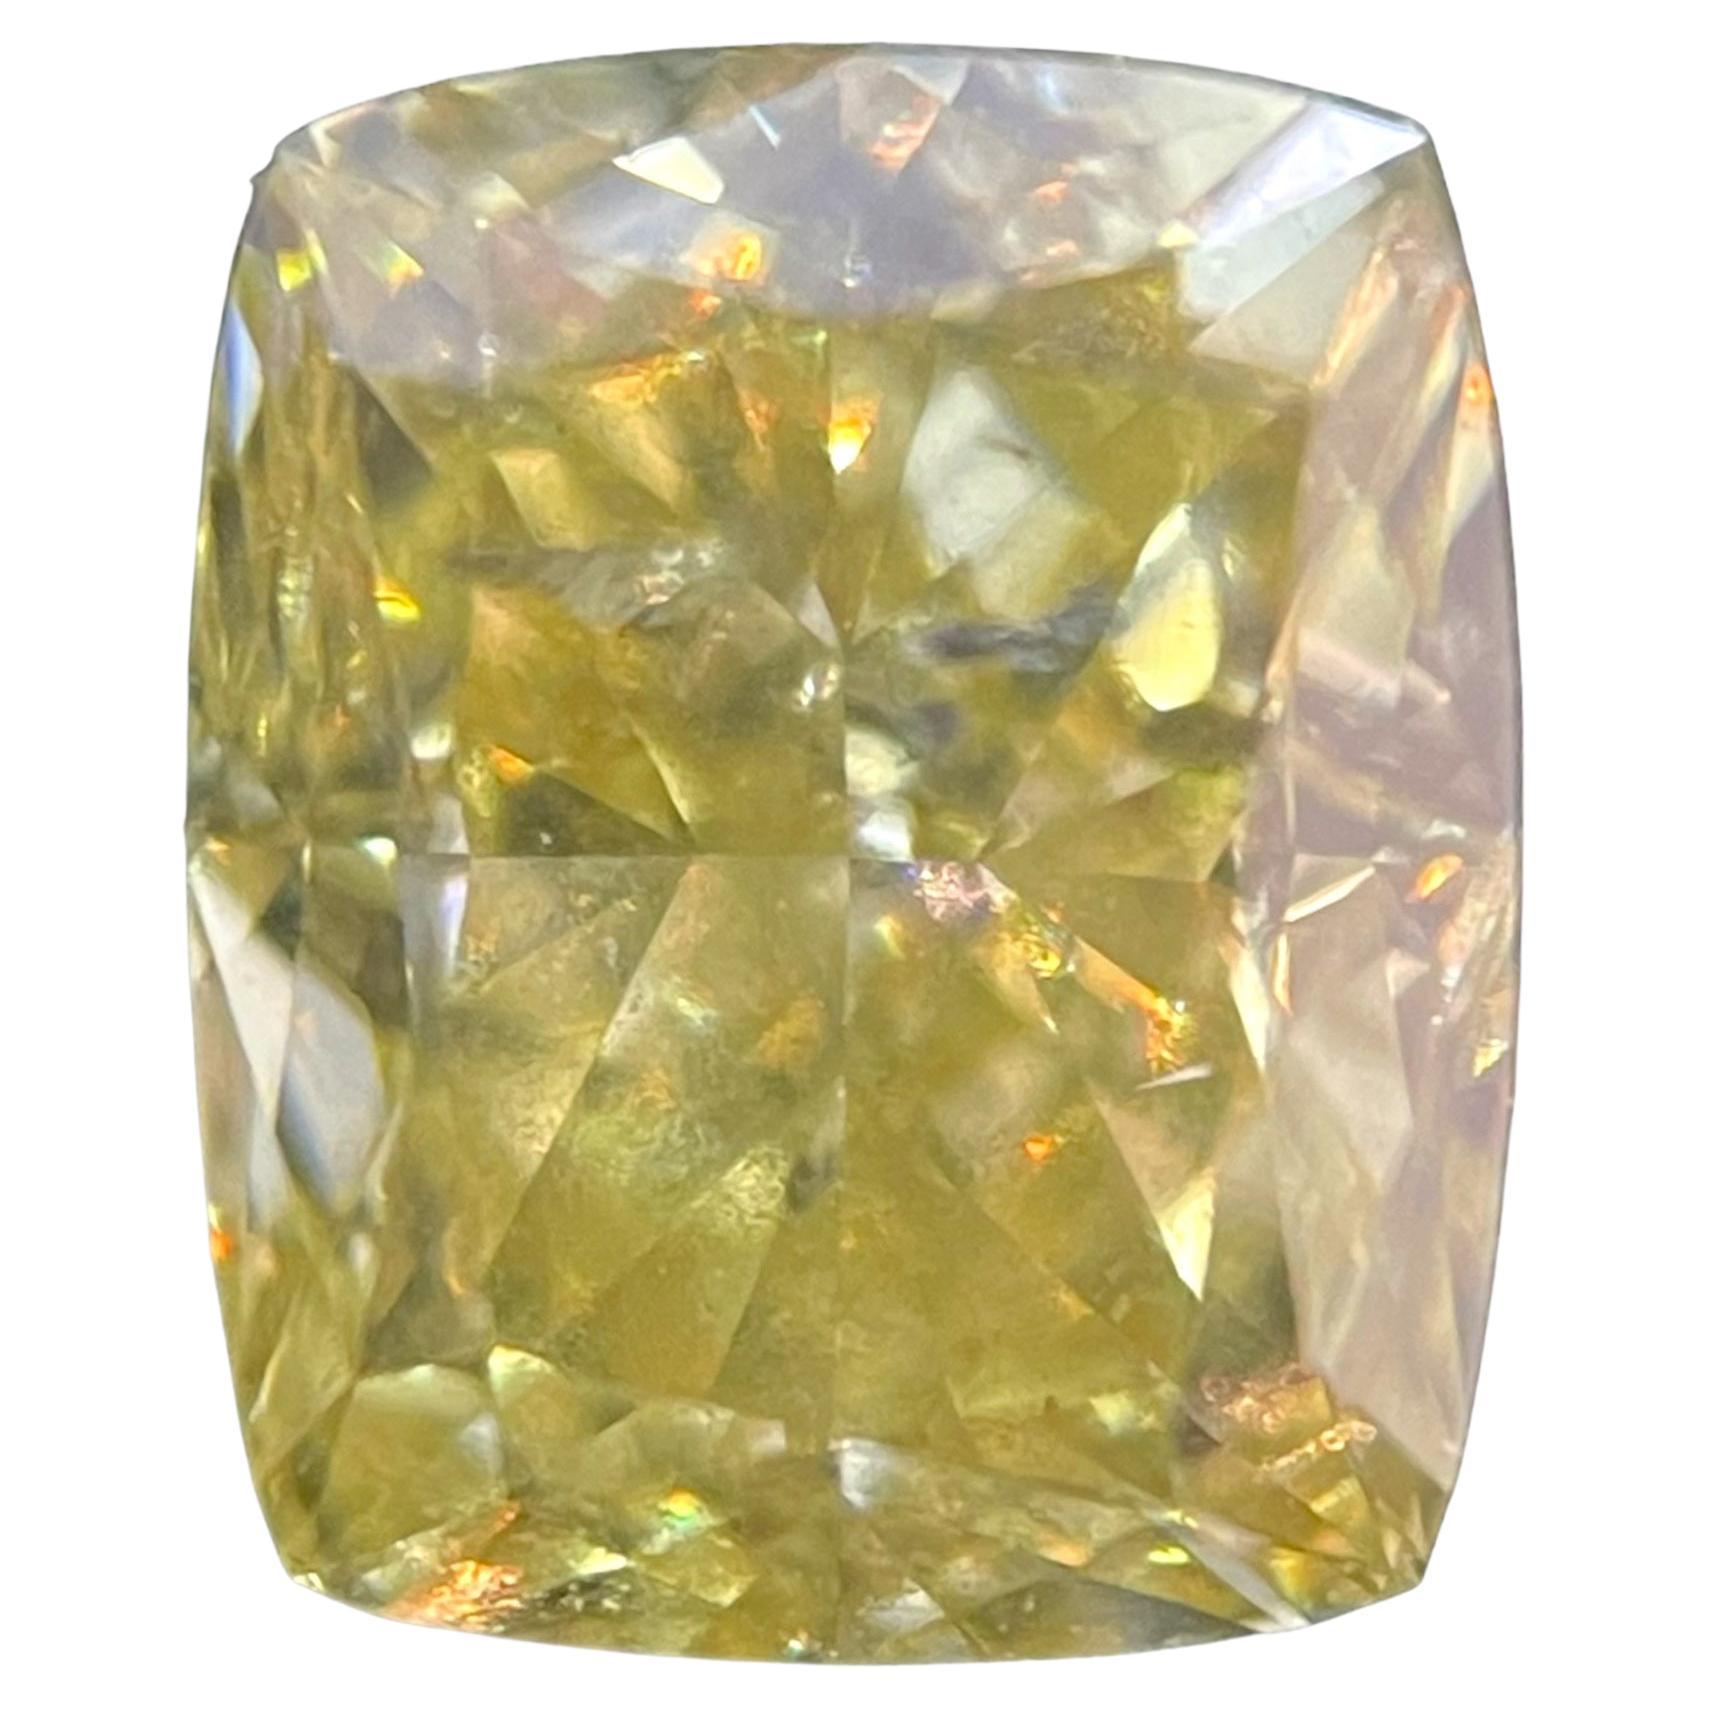 Diamant coussin brillant de 1,01 carat certifié par la GIA, de couleur jaune fantaisie, pureté SI2